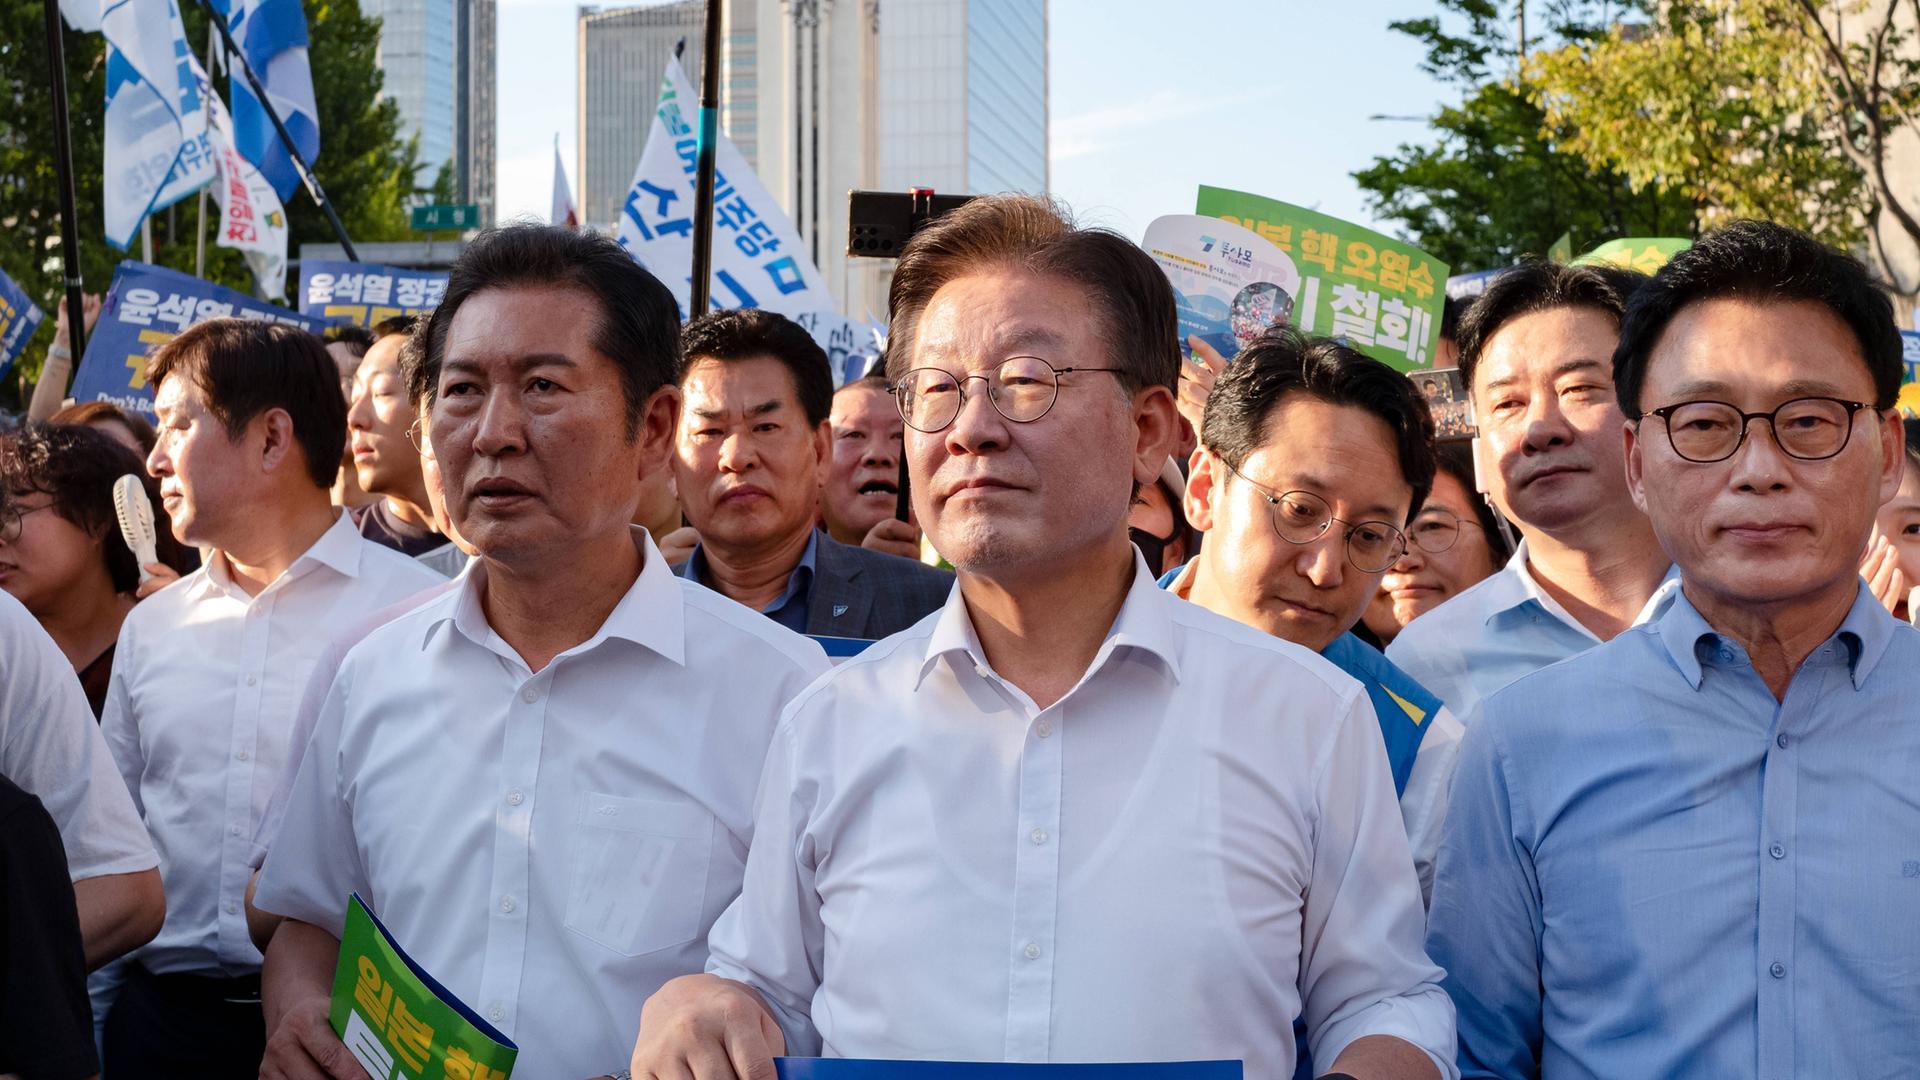 Das Bild zeigt Lee Jae-myung während einer Versammlung, um ihn herum stehen zahlreiche Menschen.